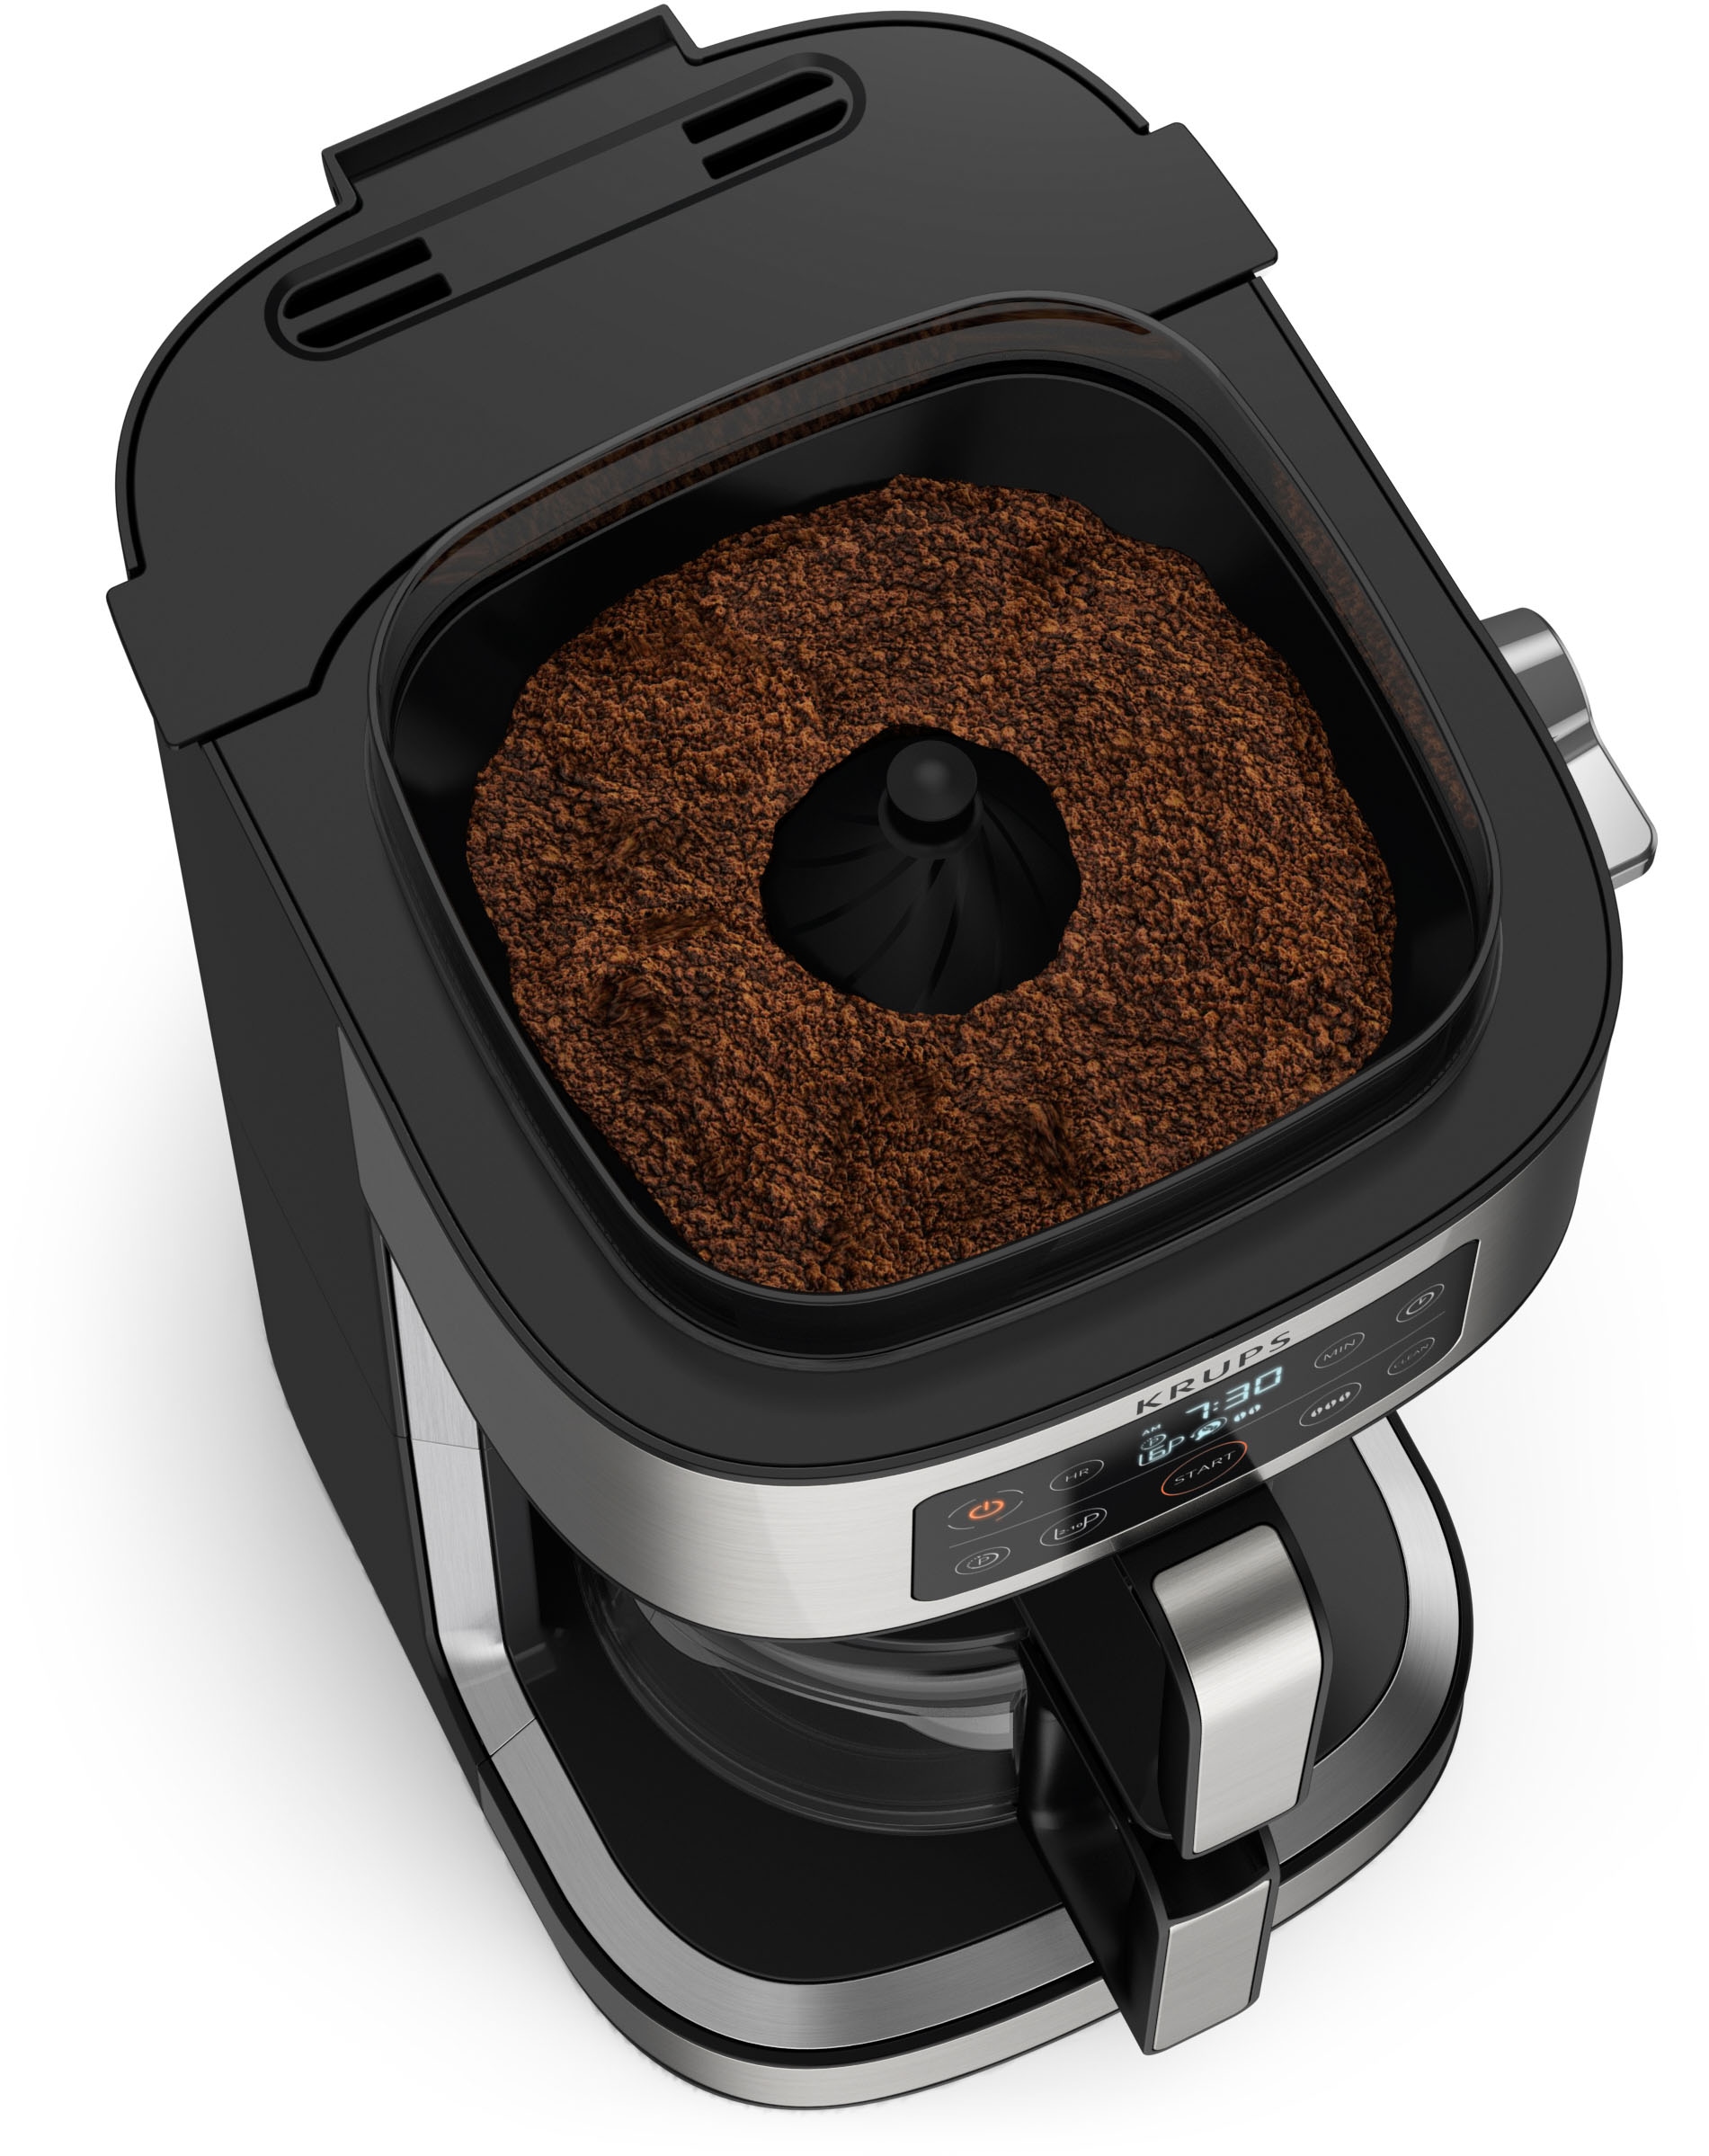 Krups Filterkaffeemaschine »KM760D Aroma Partner«, 1,25 l Kaffeekanne, integrierte Kaffee-Vorratsbox für bis zu 400 g frischen Kaffee